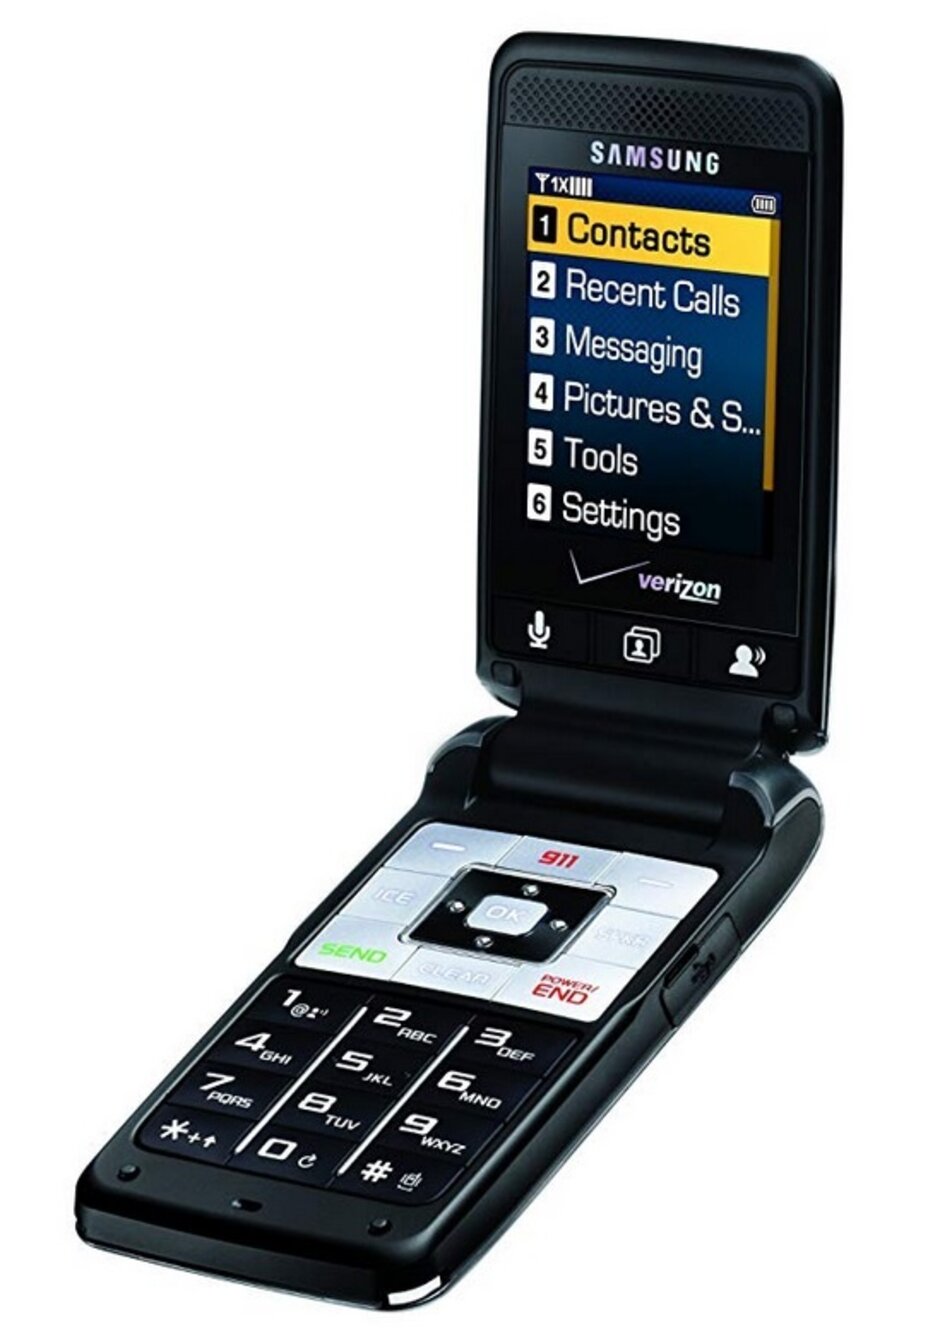   Đây là chiếc Samsung SCH-U320 năm 2009 mà Warren Buffet đang sử dụng cho đến gần đây  